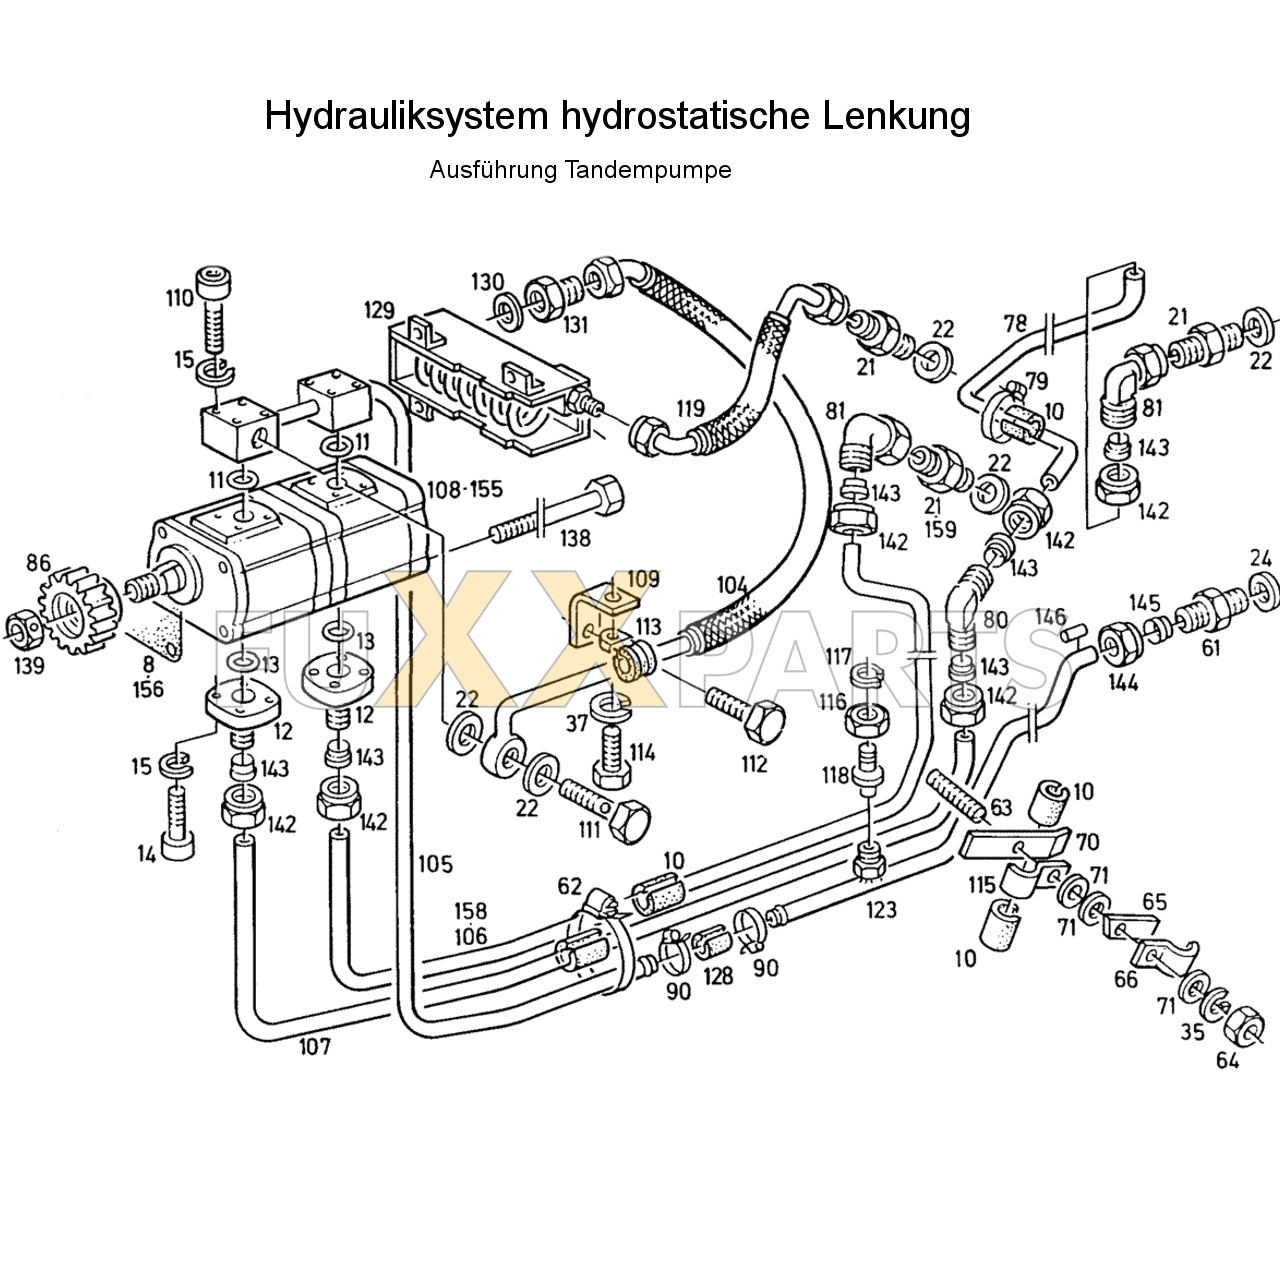 D 7207 Hydrauliksystem hyd. Lenkung Tandemp